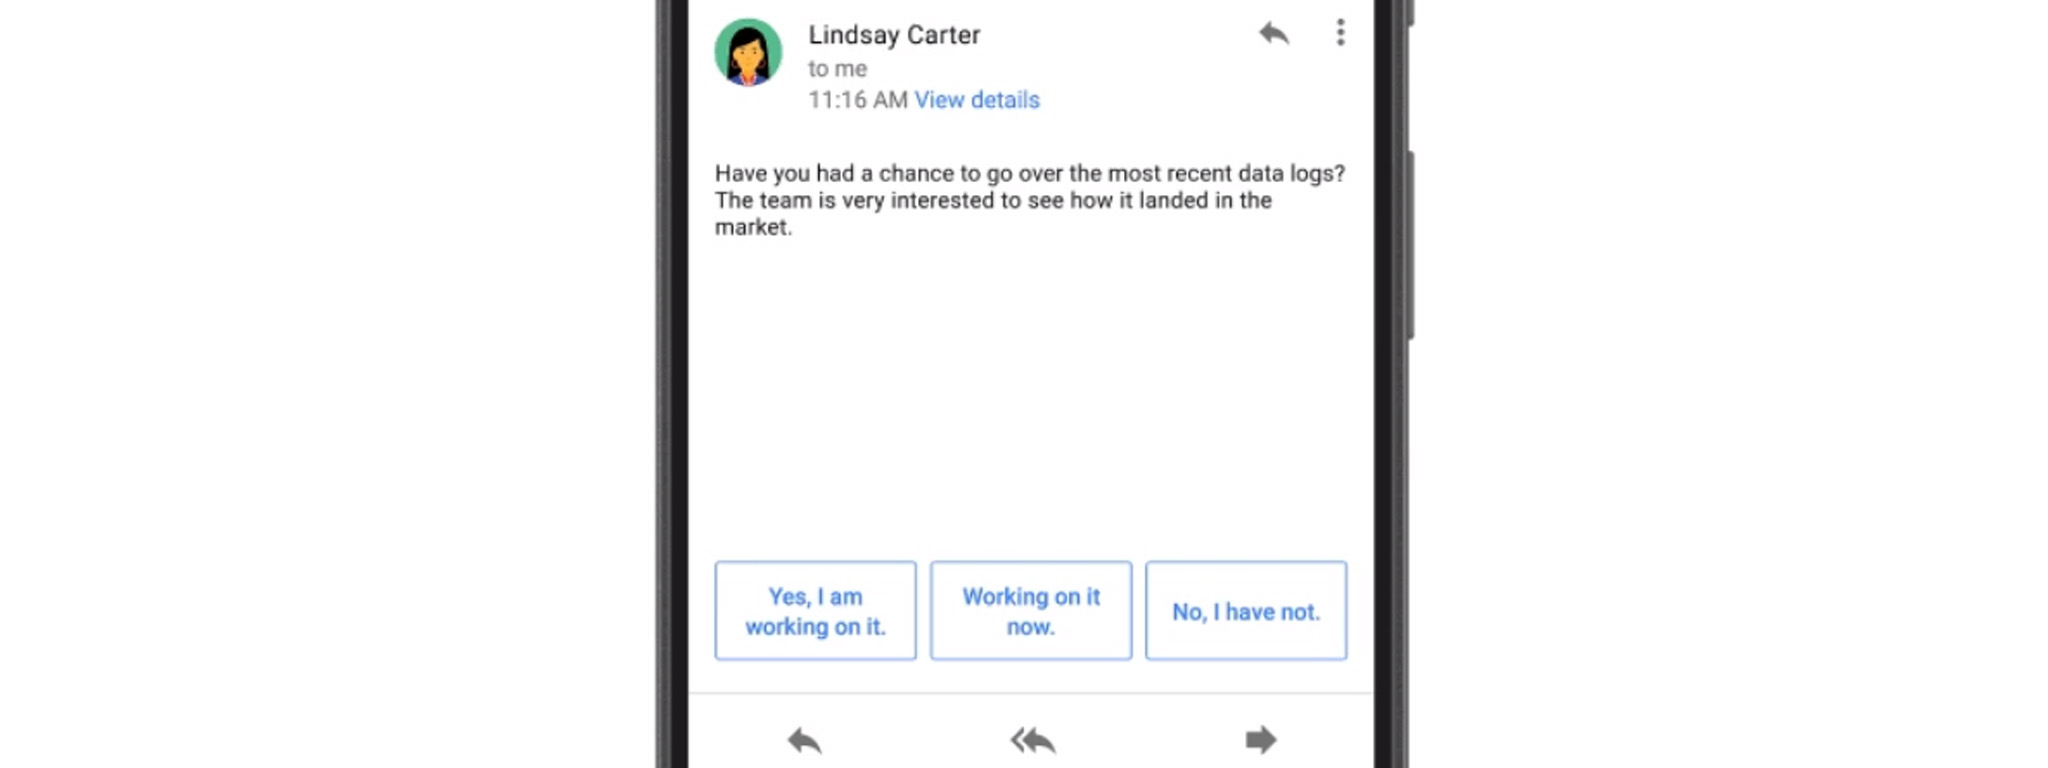 [Google I/O 2017] Gmail trên iOS và Android sẽ có "Smart Reply", dùng AI để tự động trả lời email